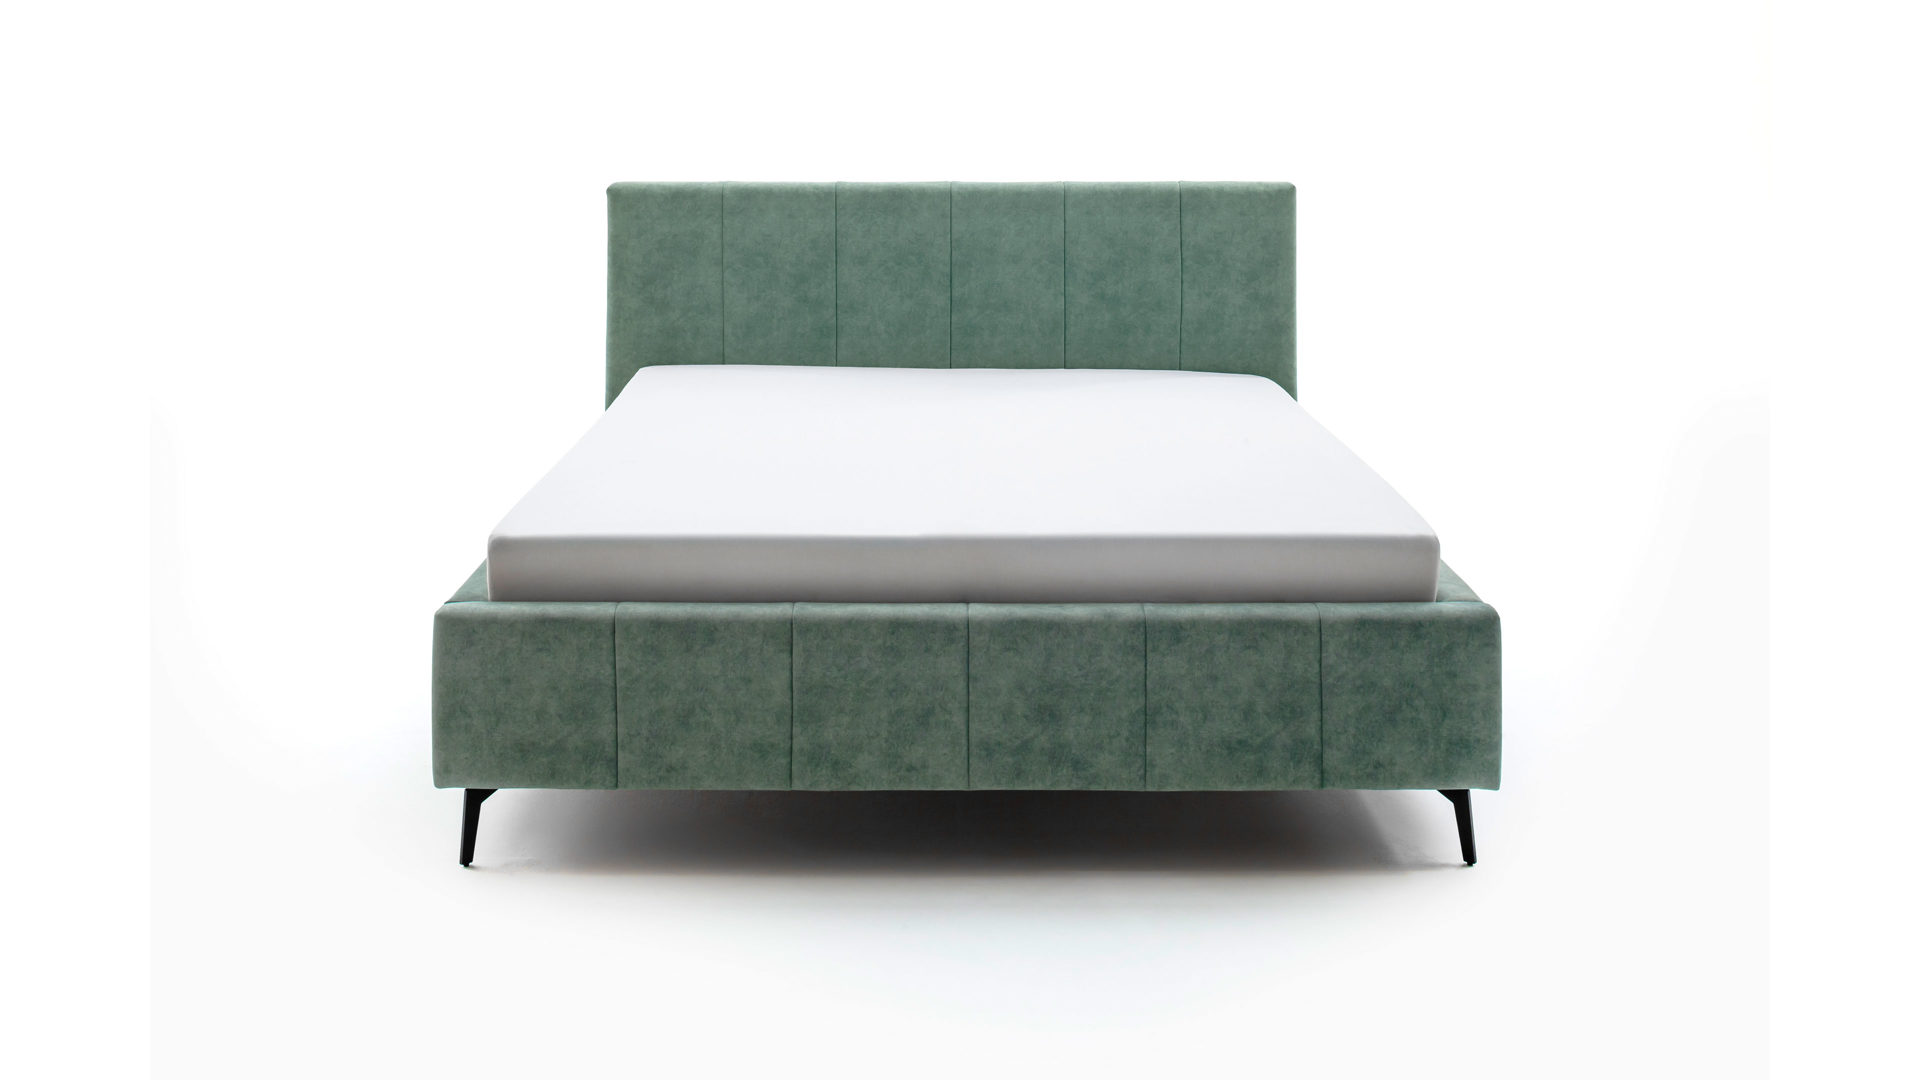 Komfortable Betten in 160 x 200 cm